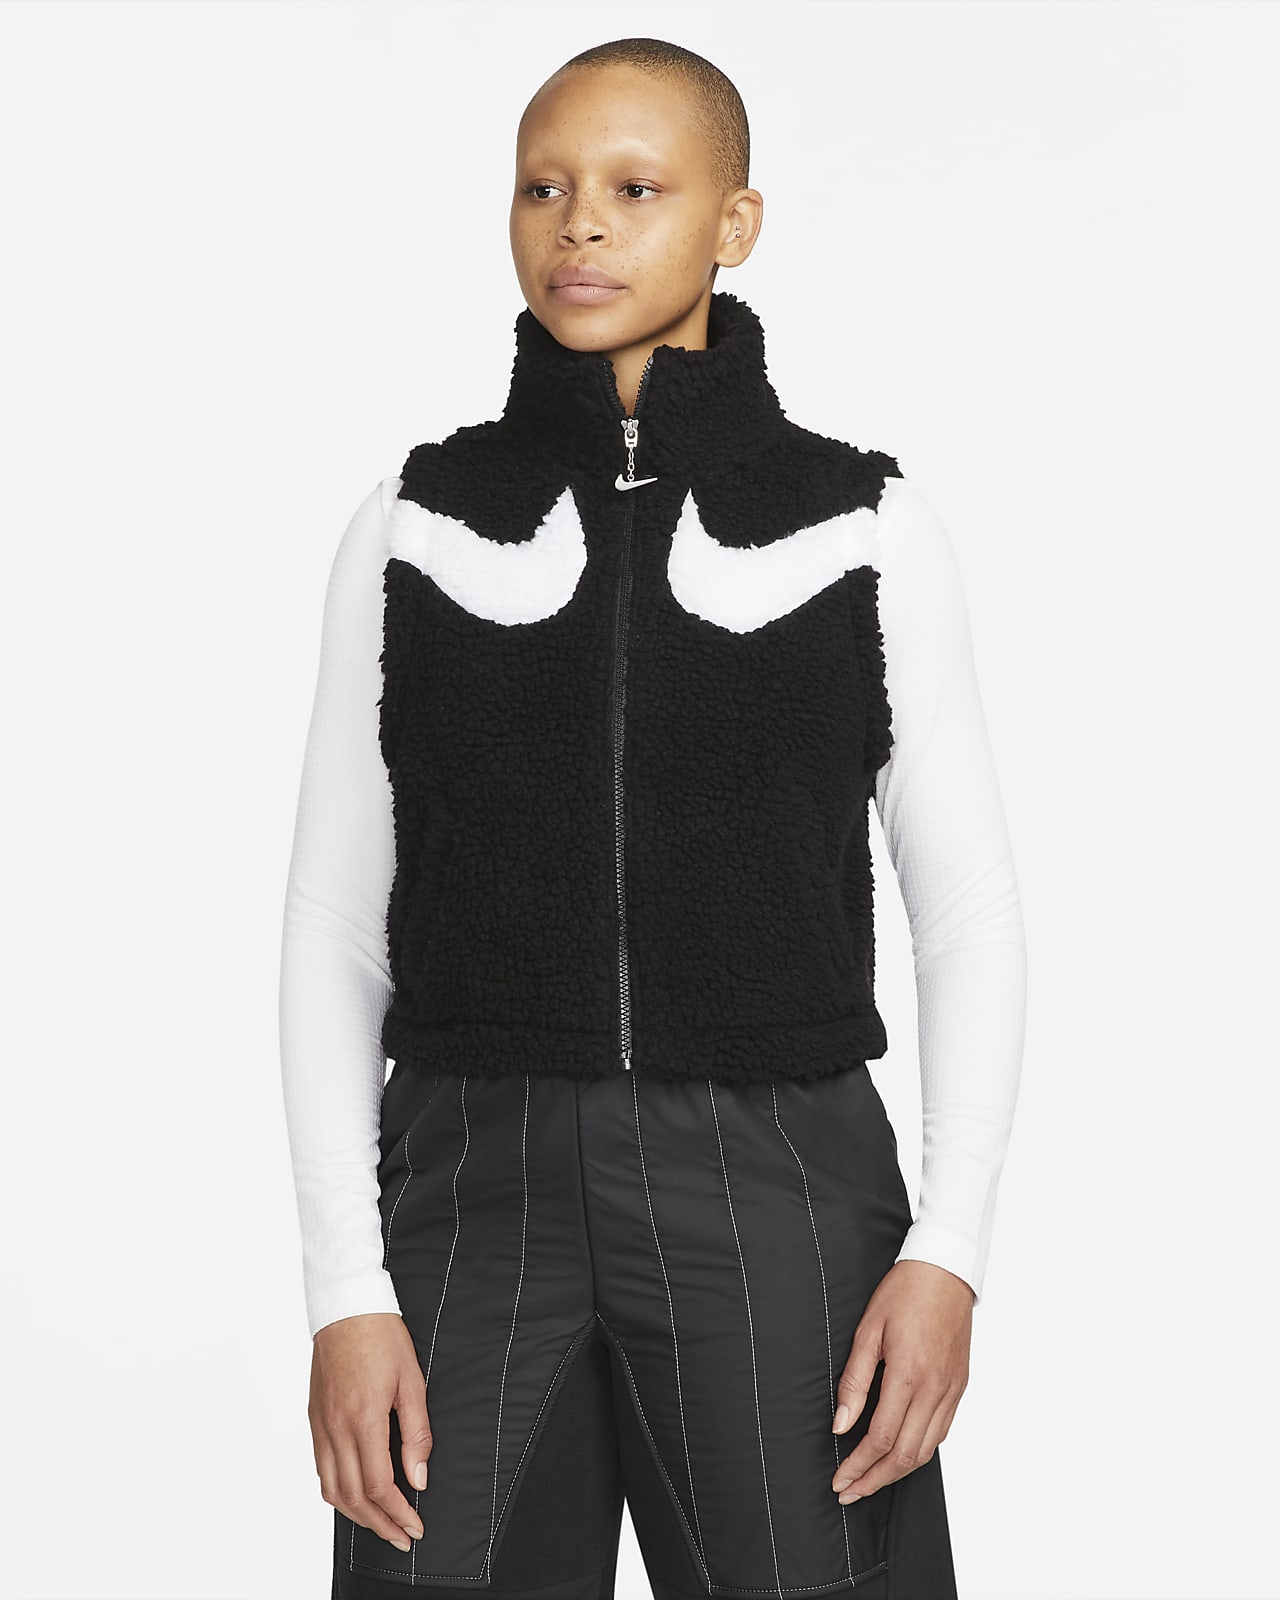 Grote hoeveelheid richting Reserve Nike Sportswear Swoosh Women's Fleece Vest. Nike.com